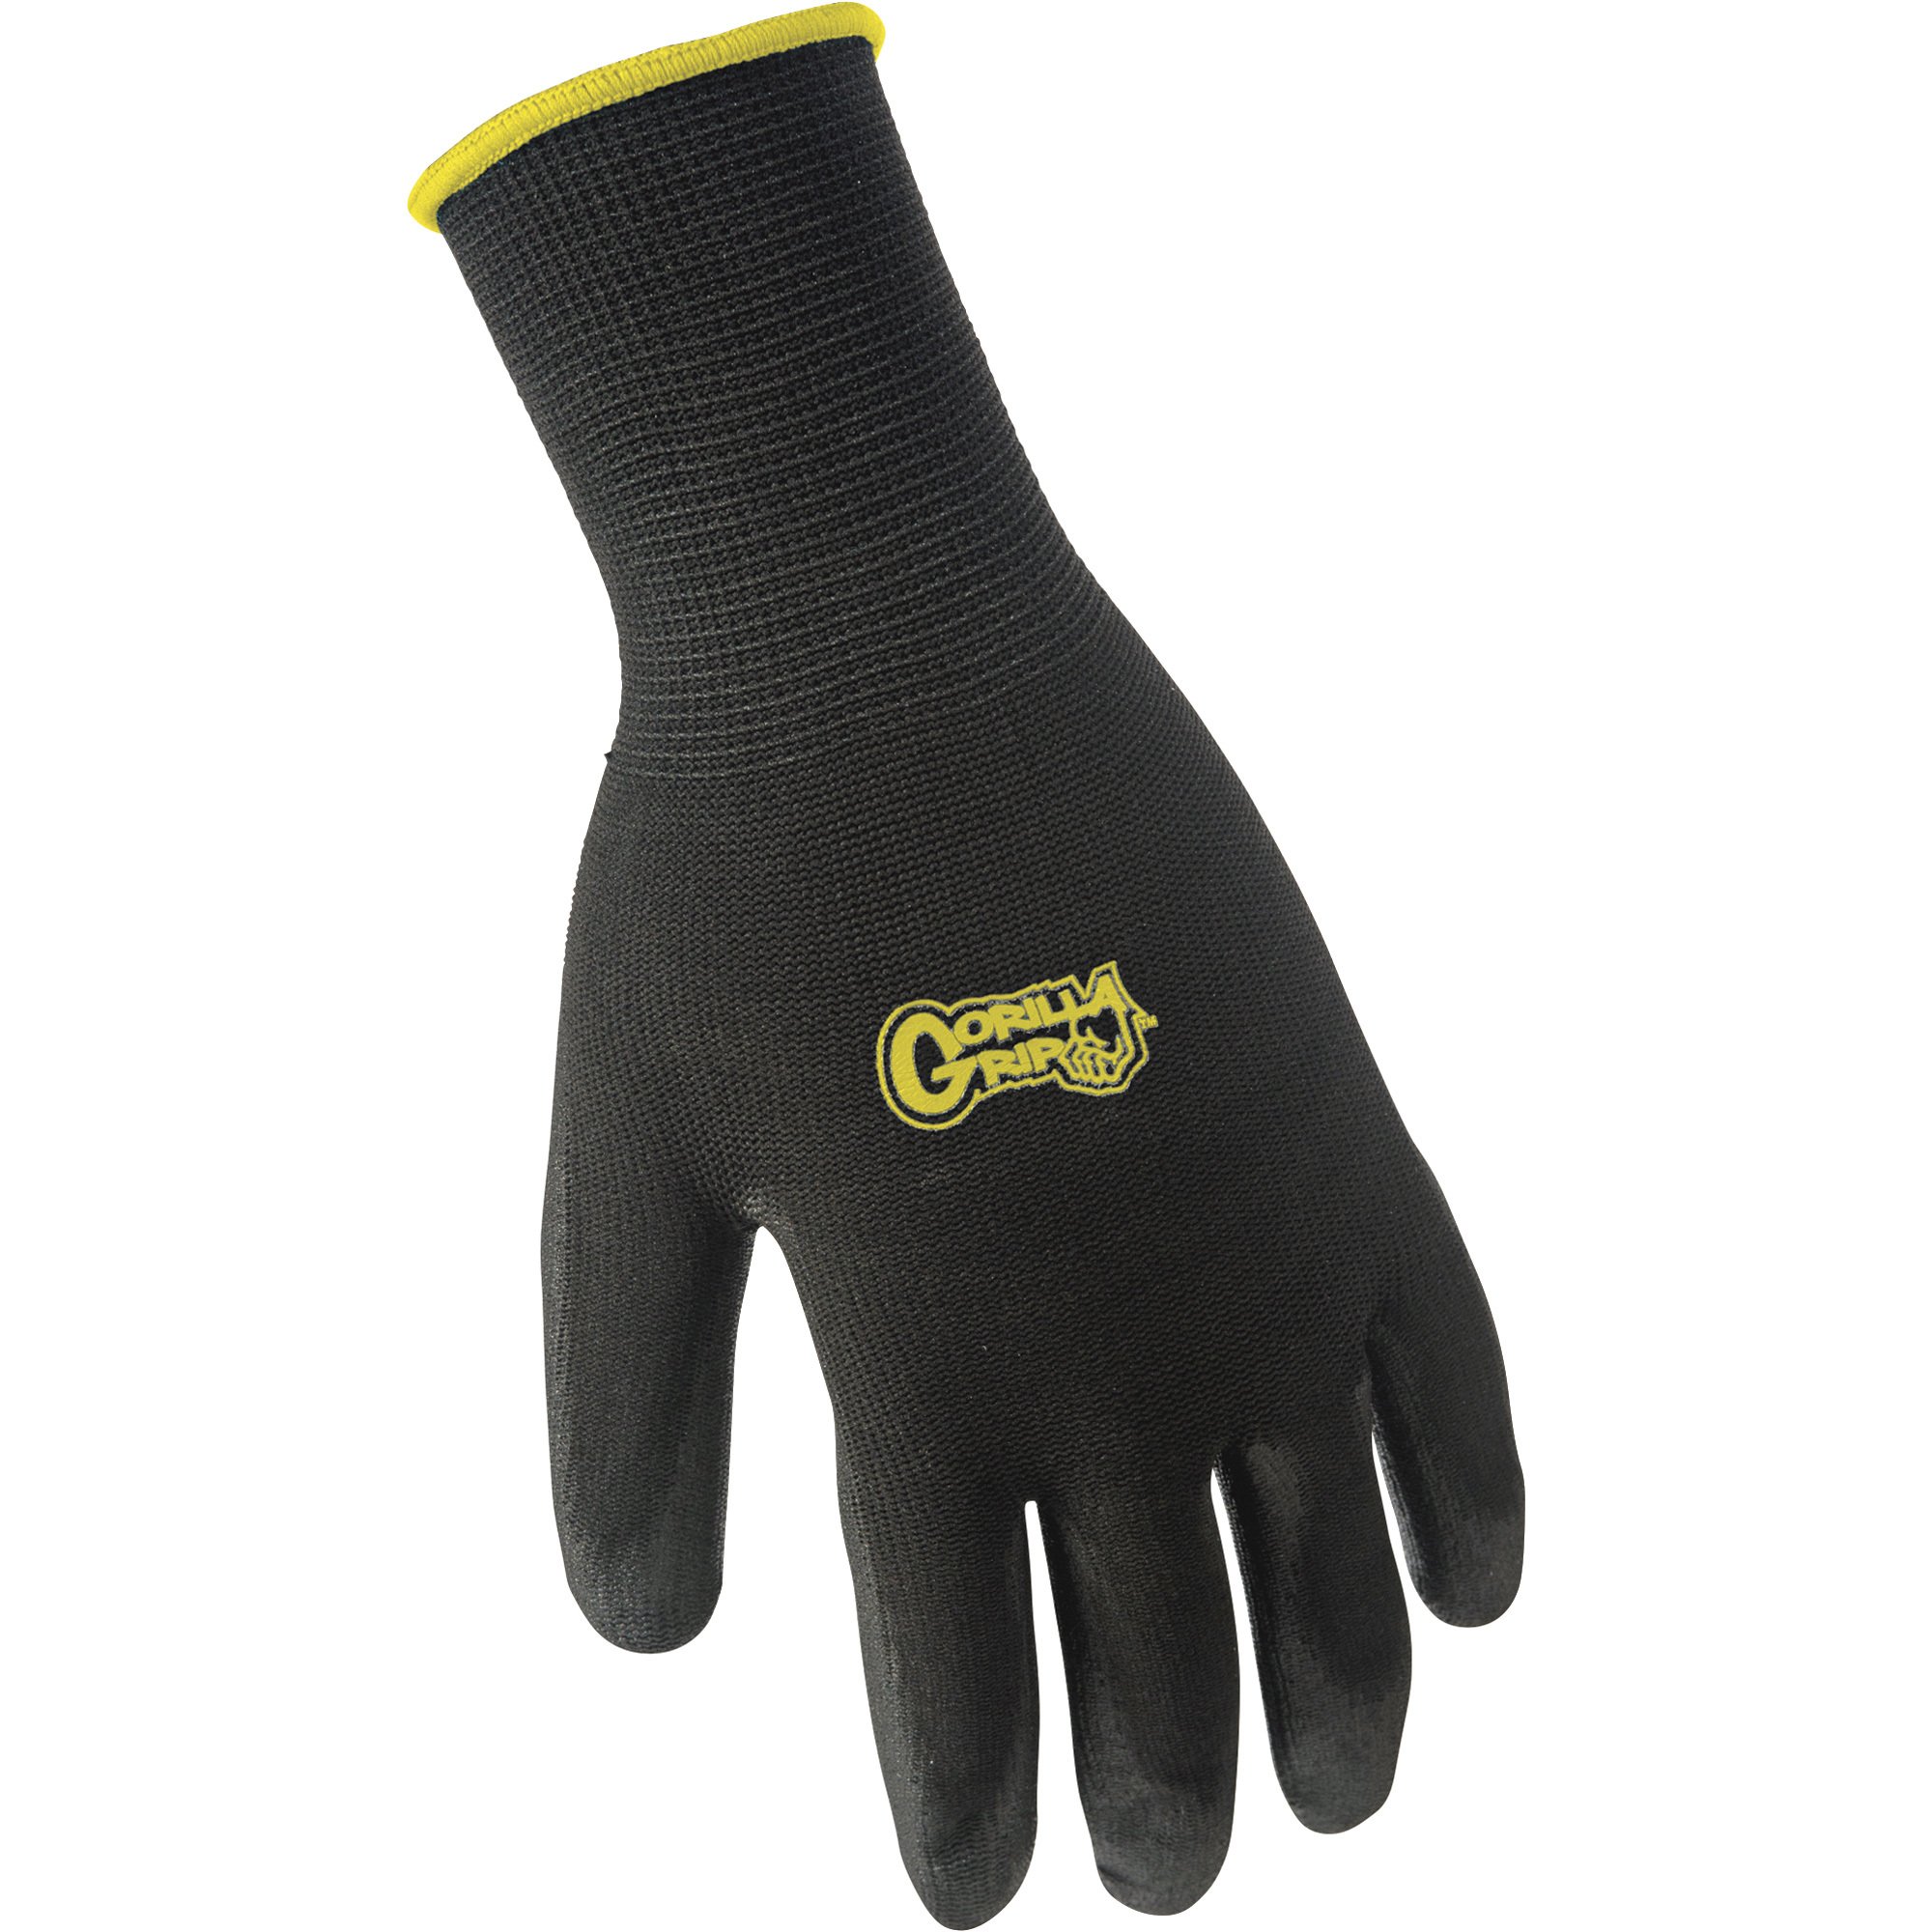 Grease Monkey Men's Gorilla Grip Never Slip Gloves - XL, Model# 25053-26